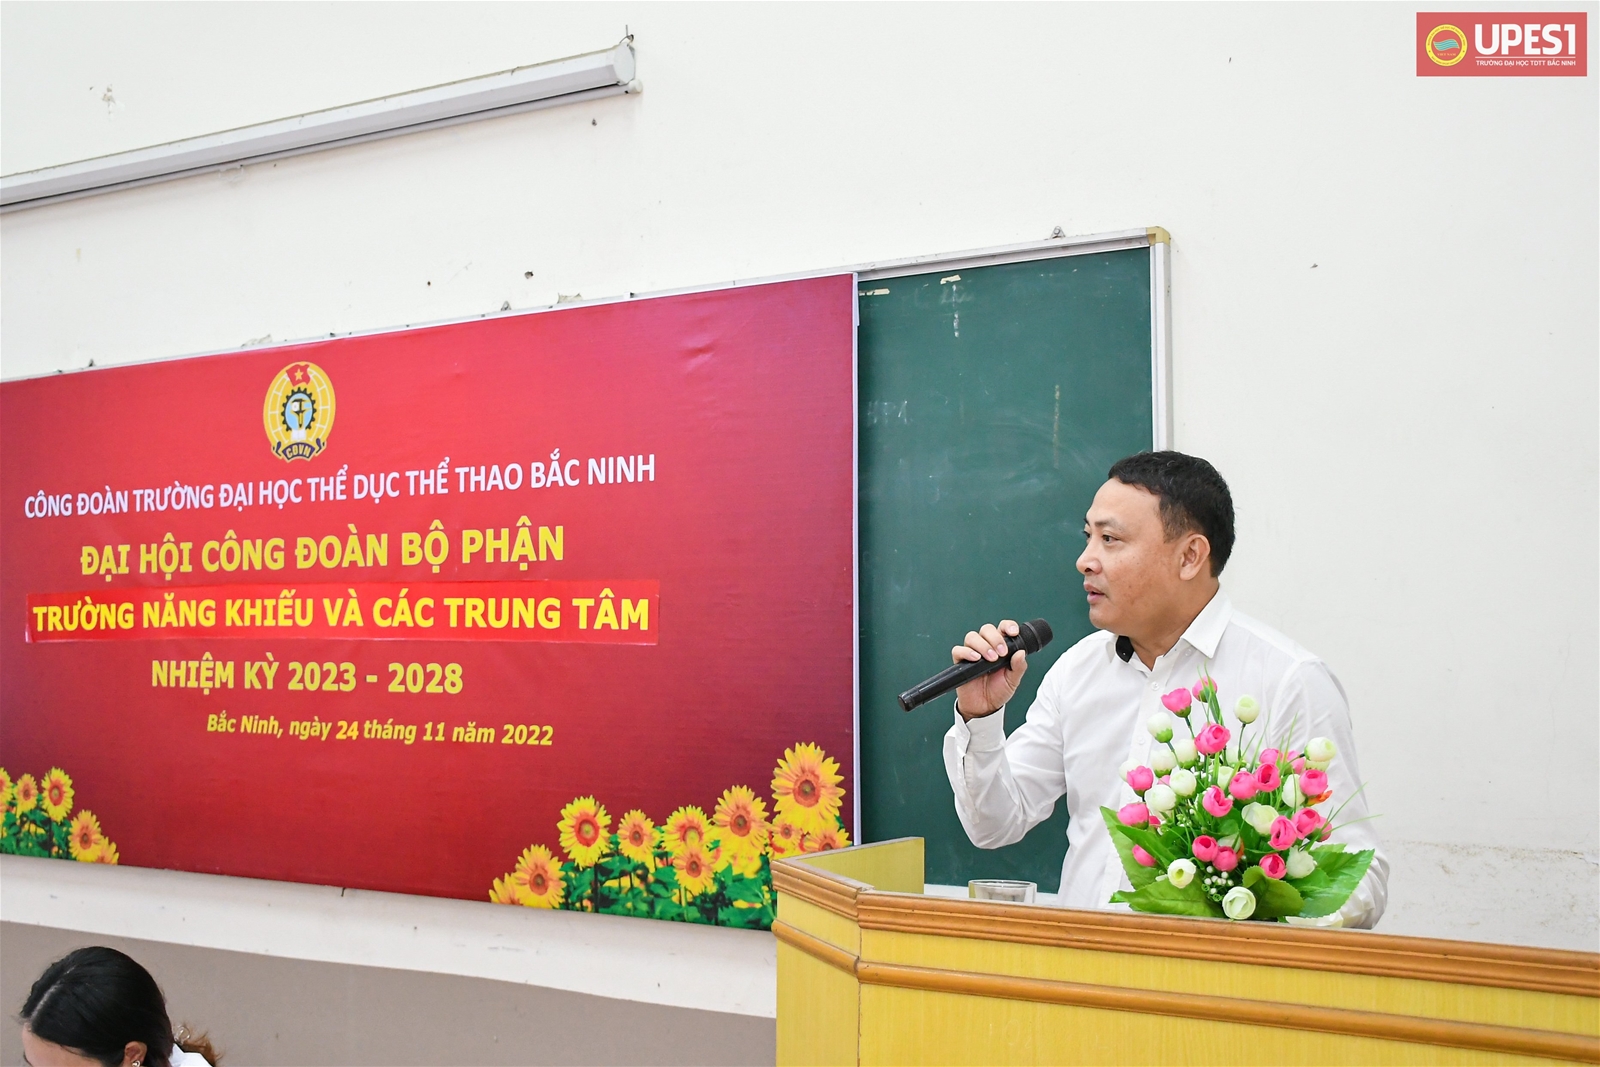 Tổ chức thành công 09 Đại hội Công đoàn bộ phận trực thuộc Công đoàn Trường TDTT Bắc Ninh Nhiệm kỳ 2023 – 2028